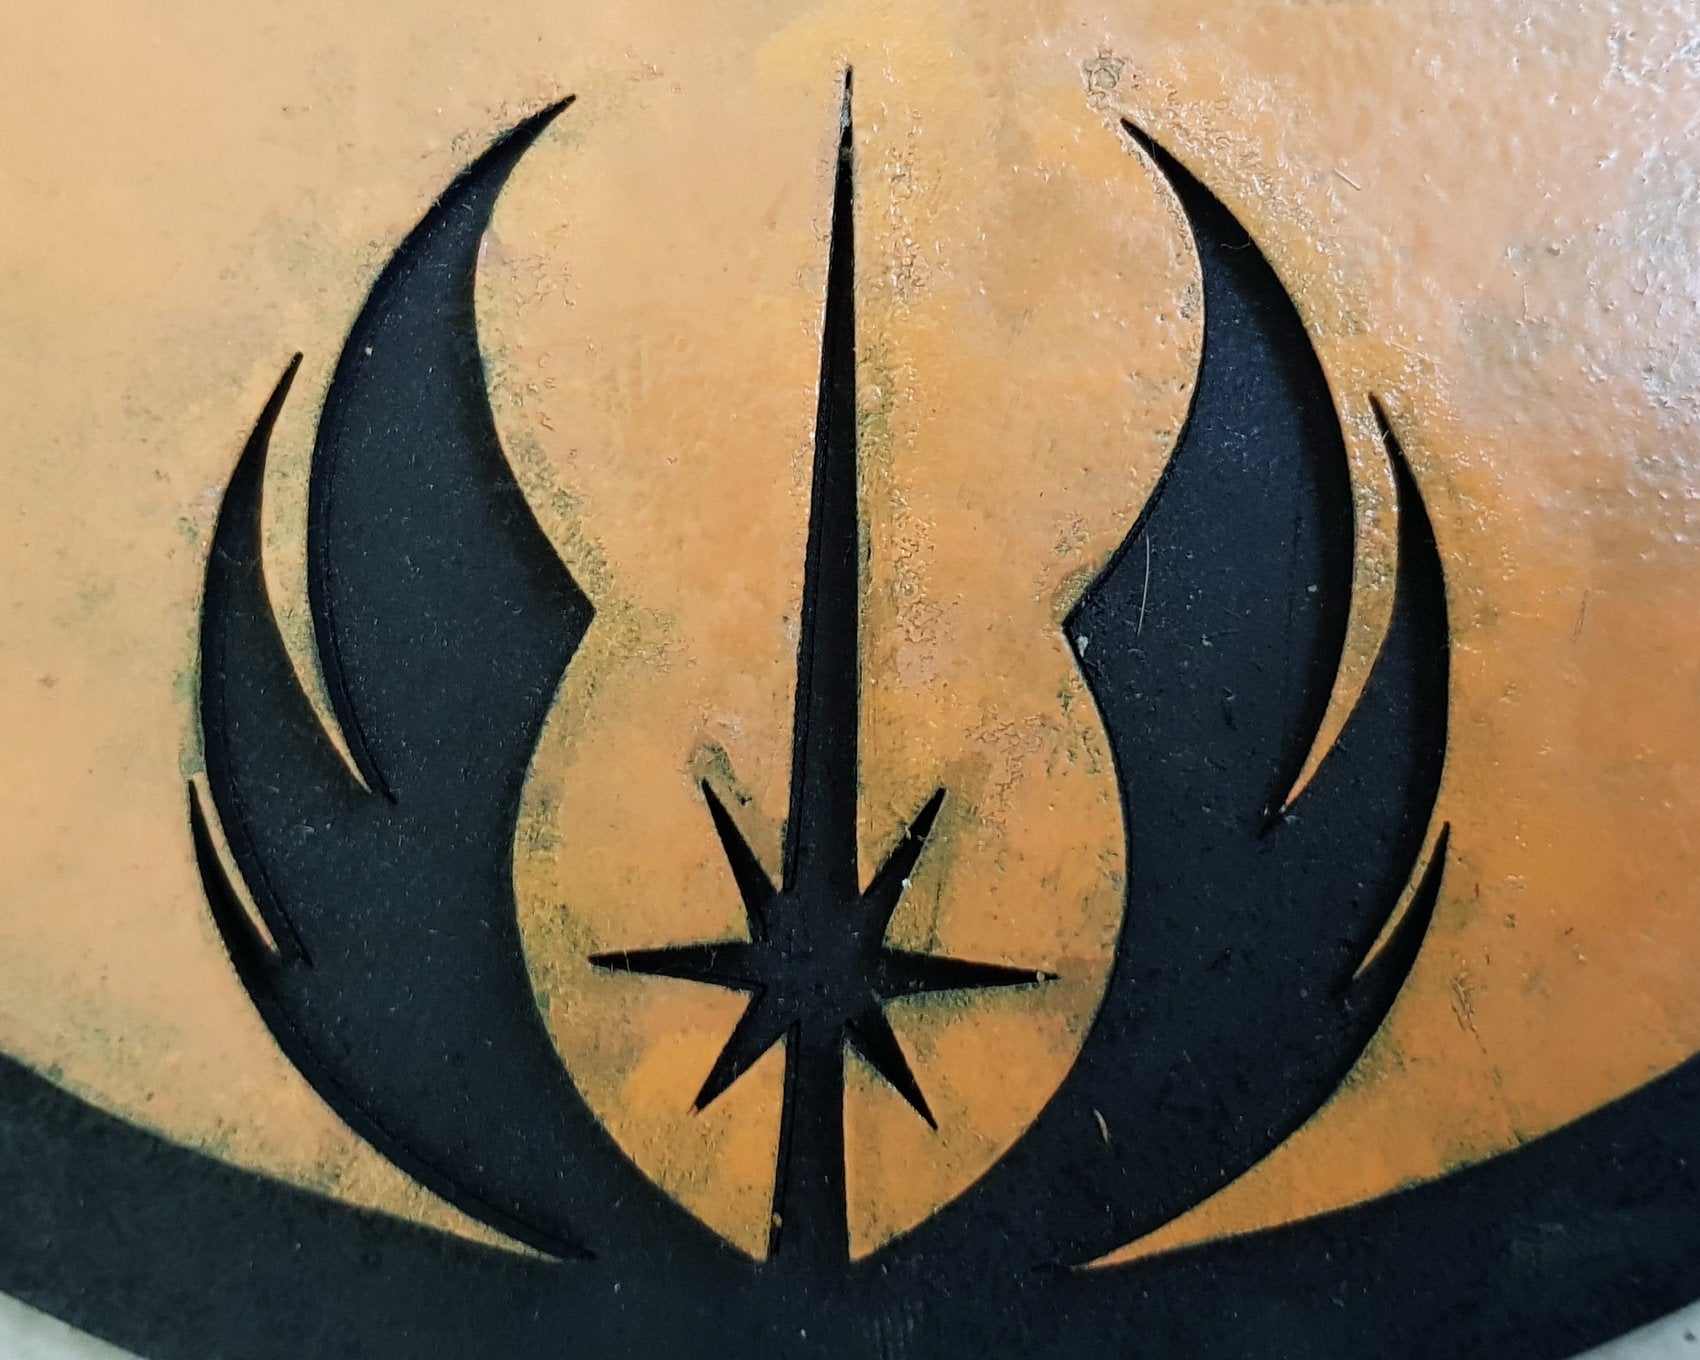 Burning rebel logo from star wars on Craiyon